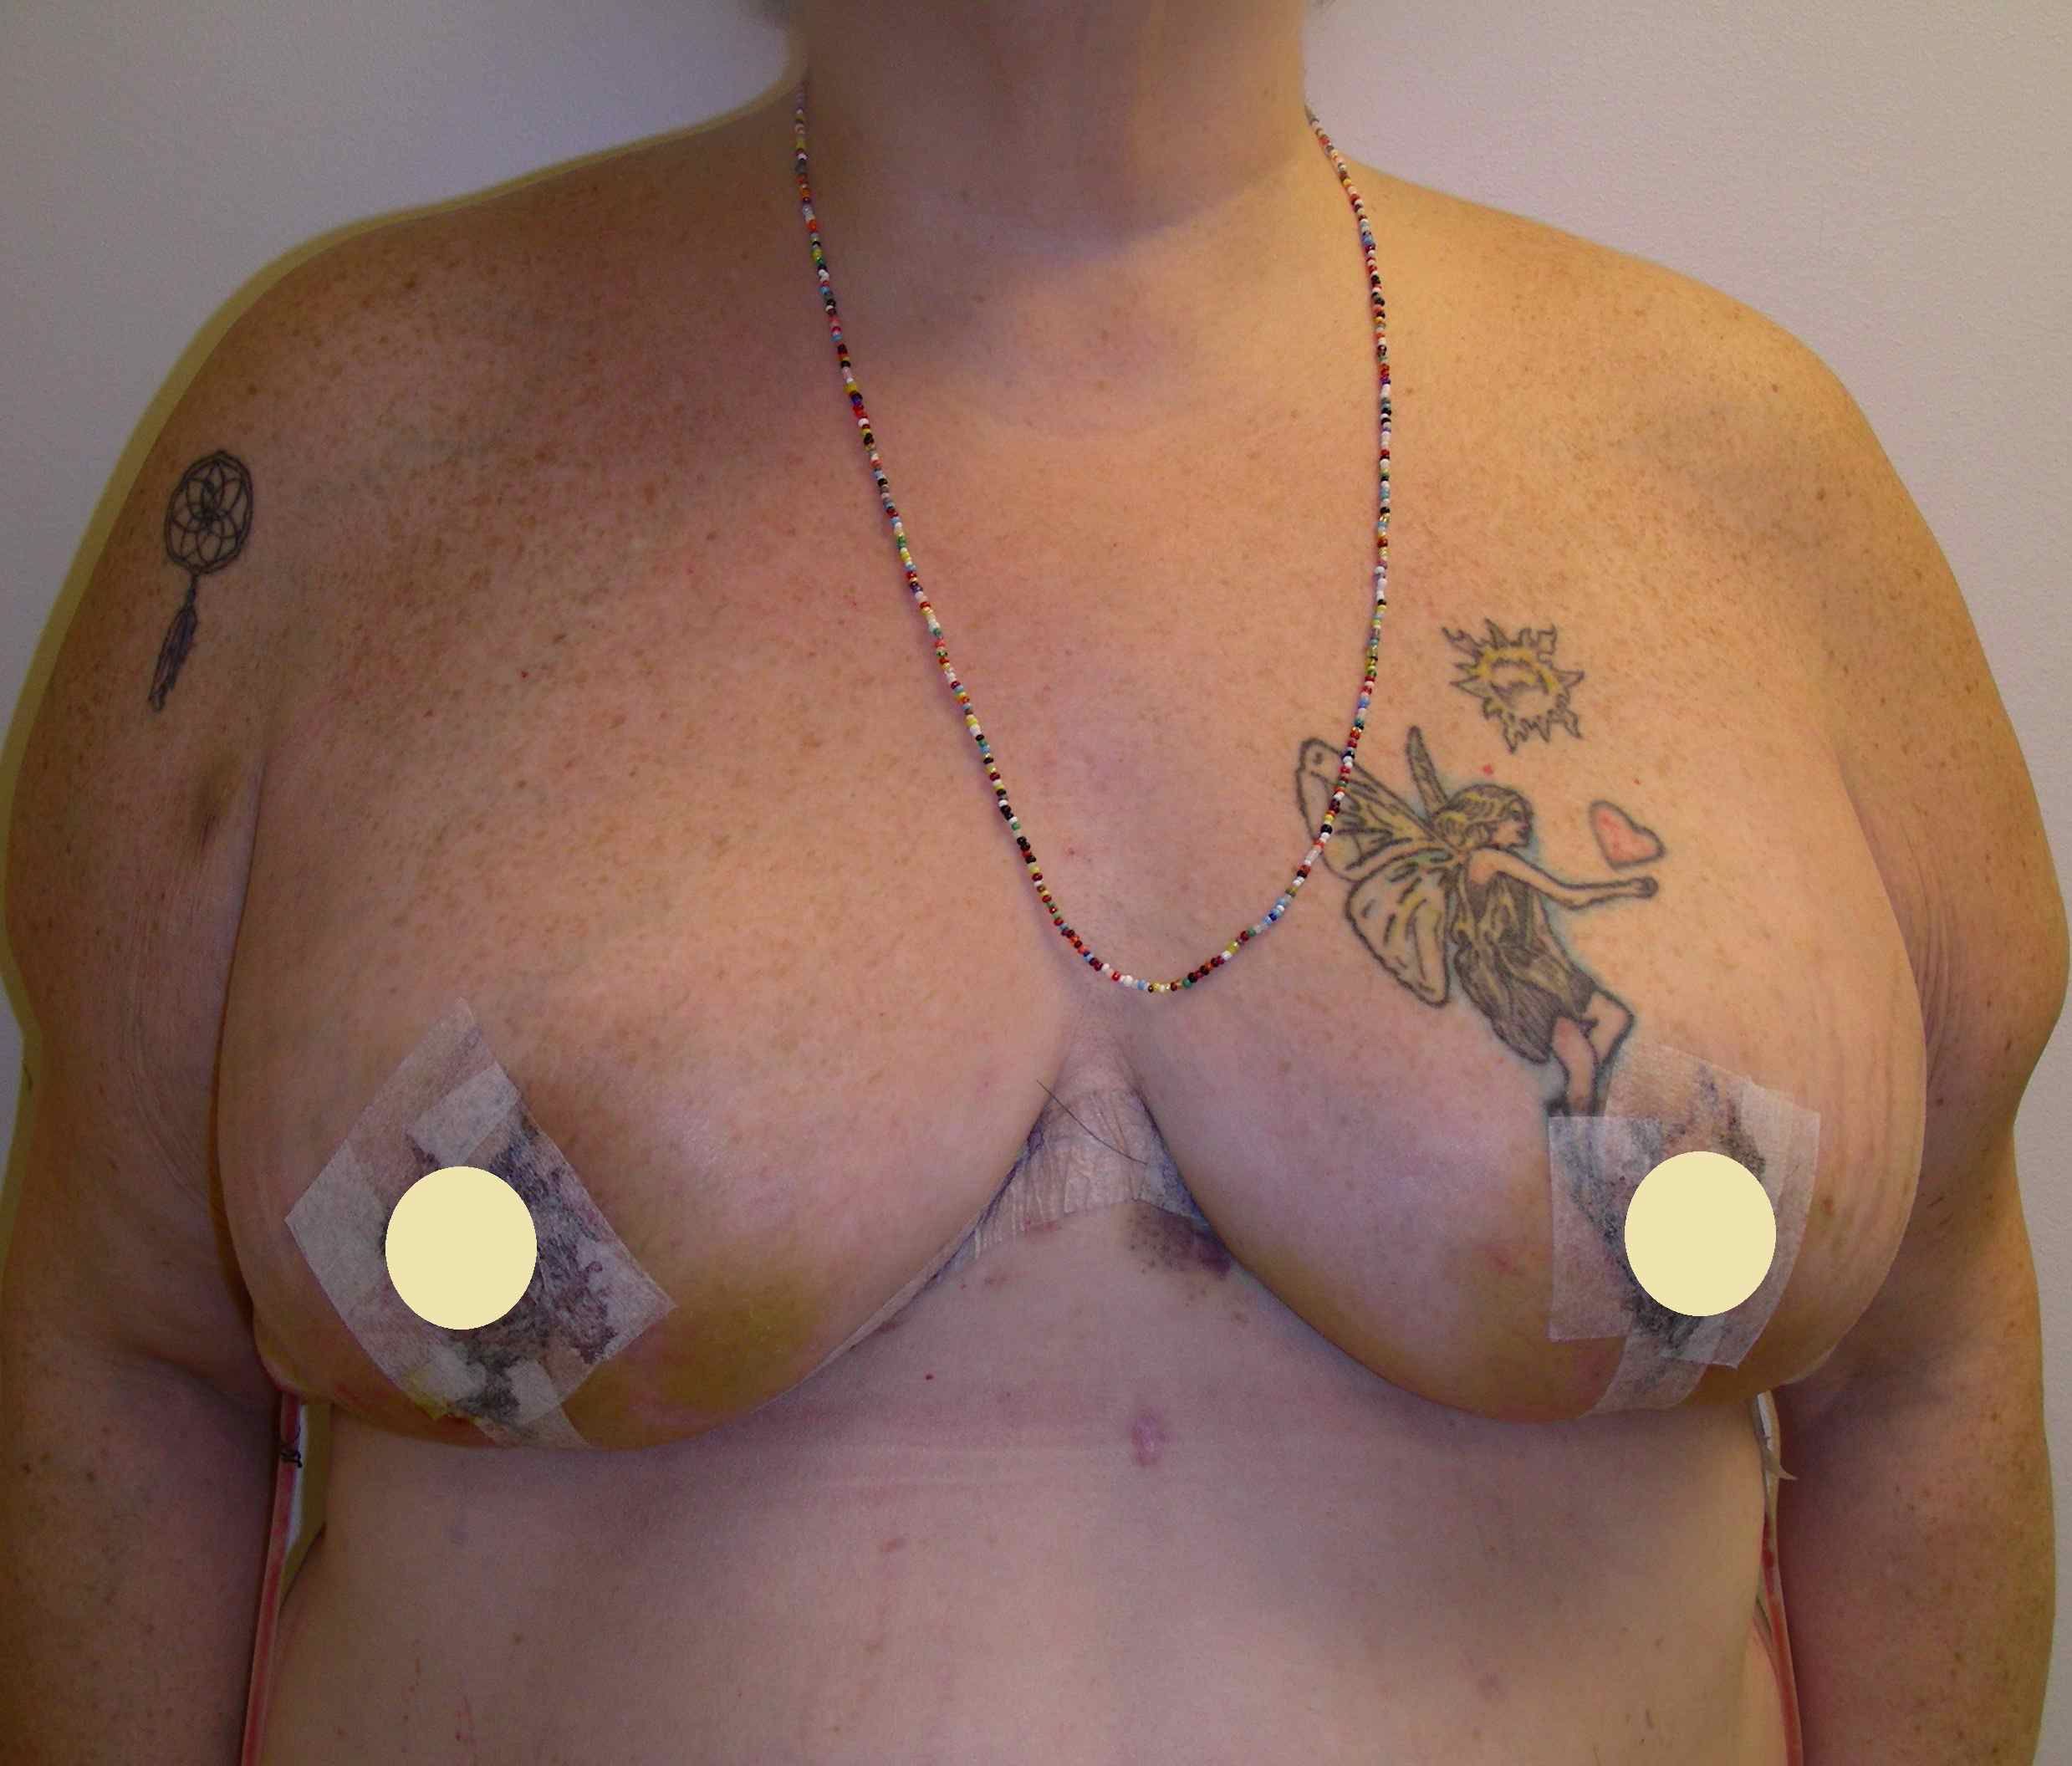 granice areole, podizanje grudi, prije operacije, oblik dojke